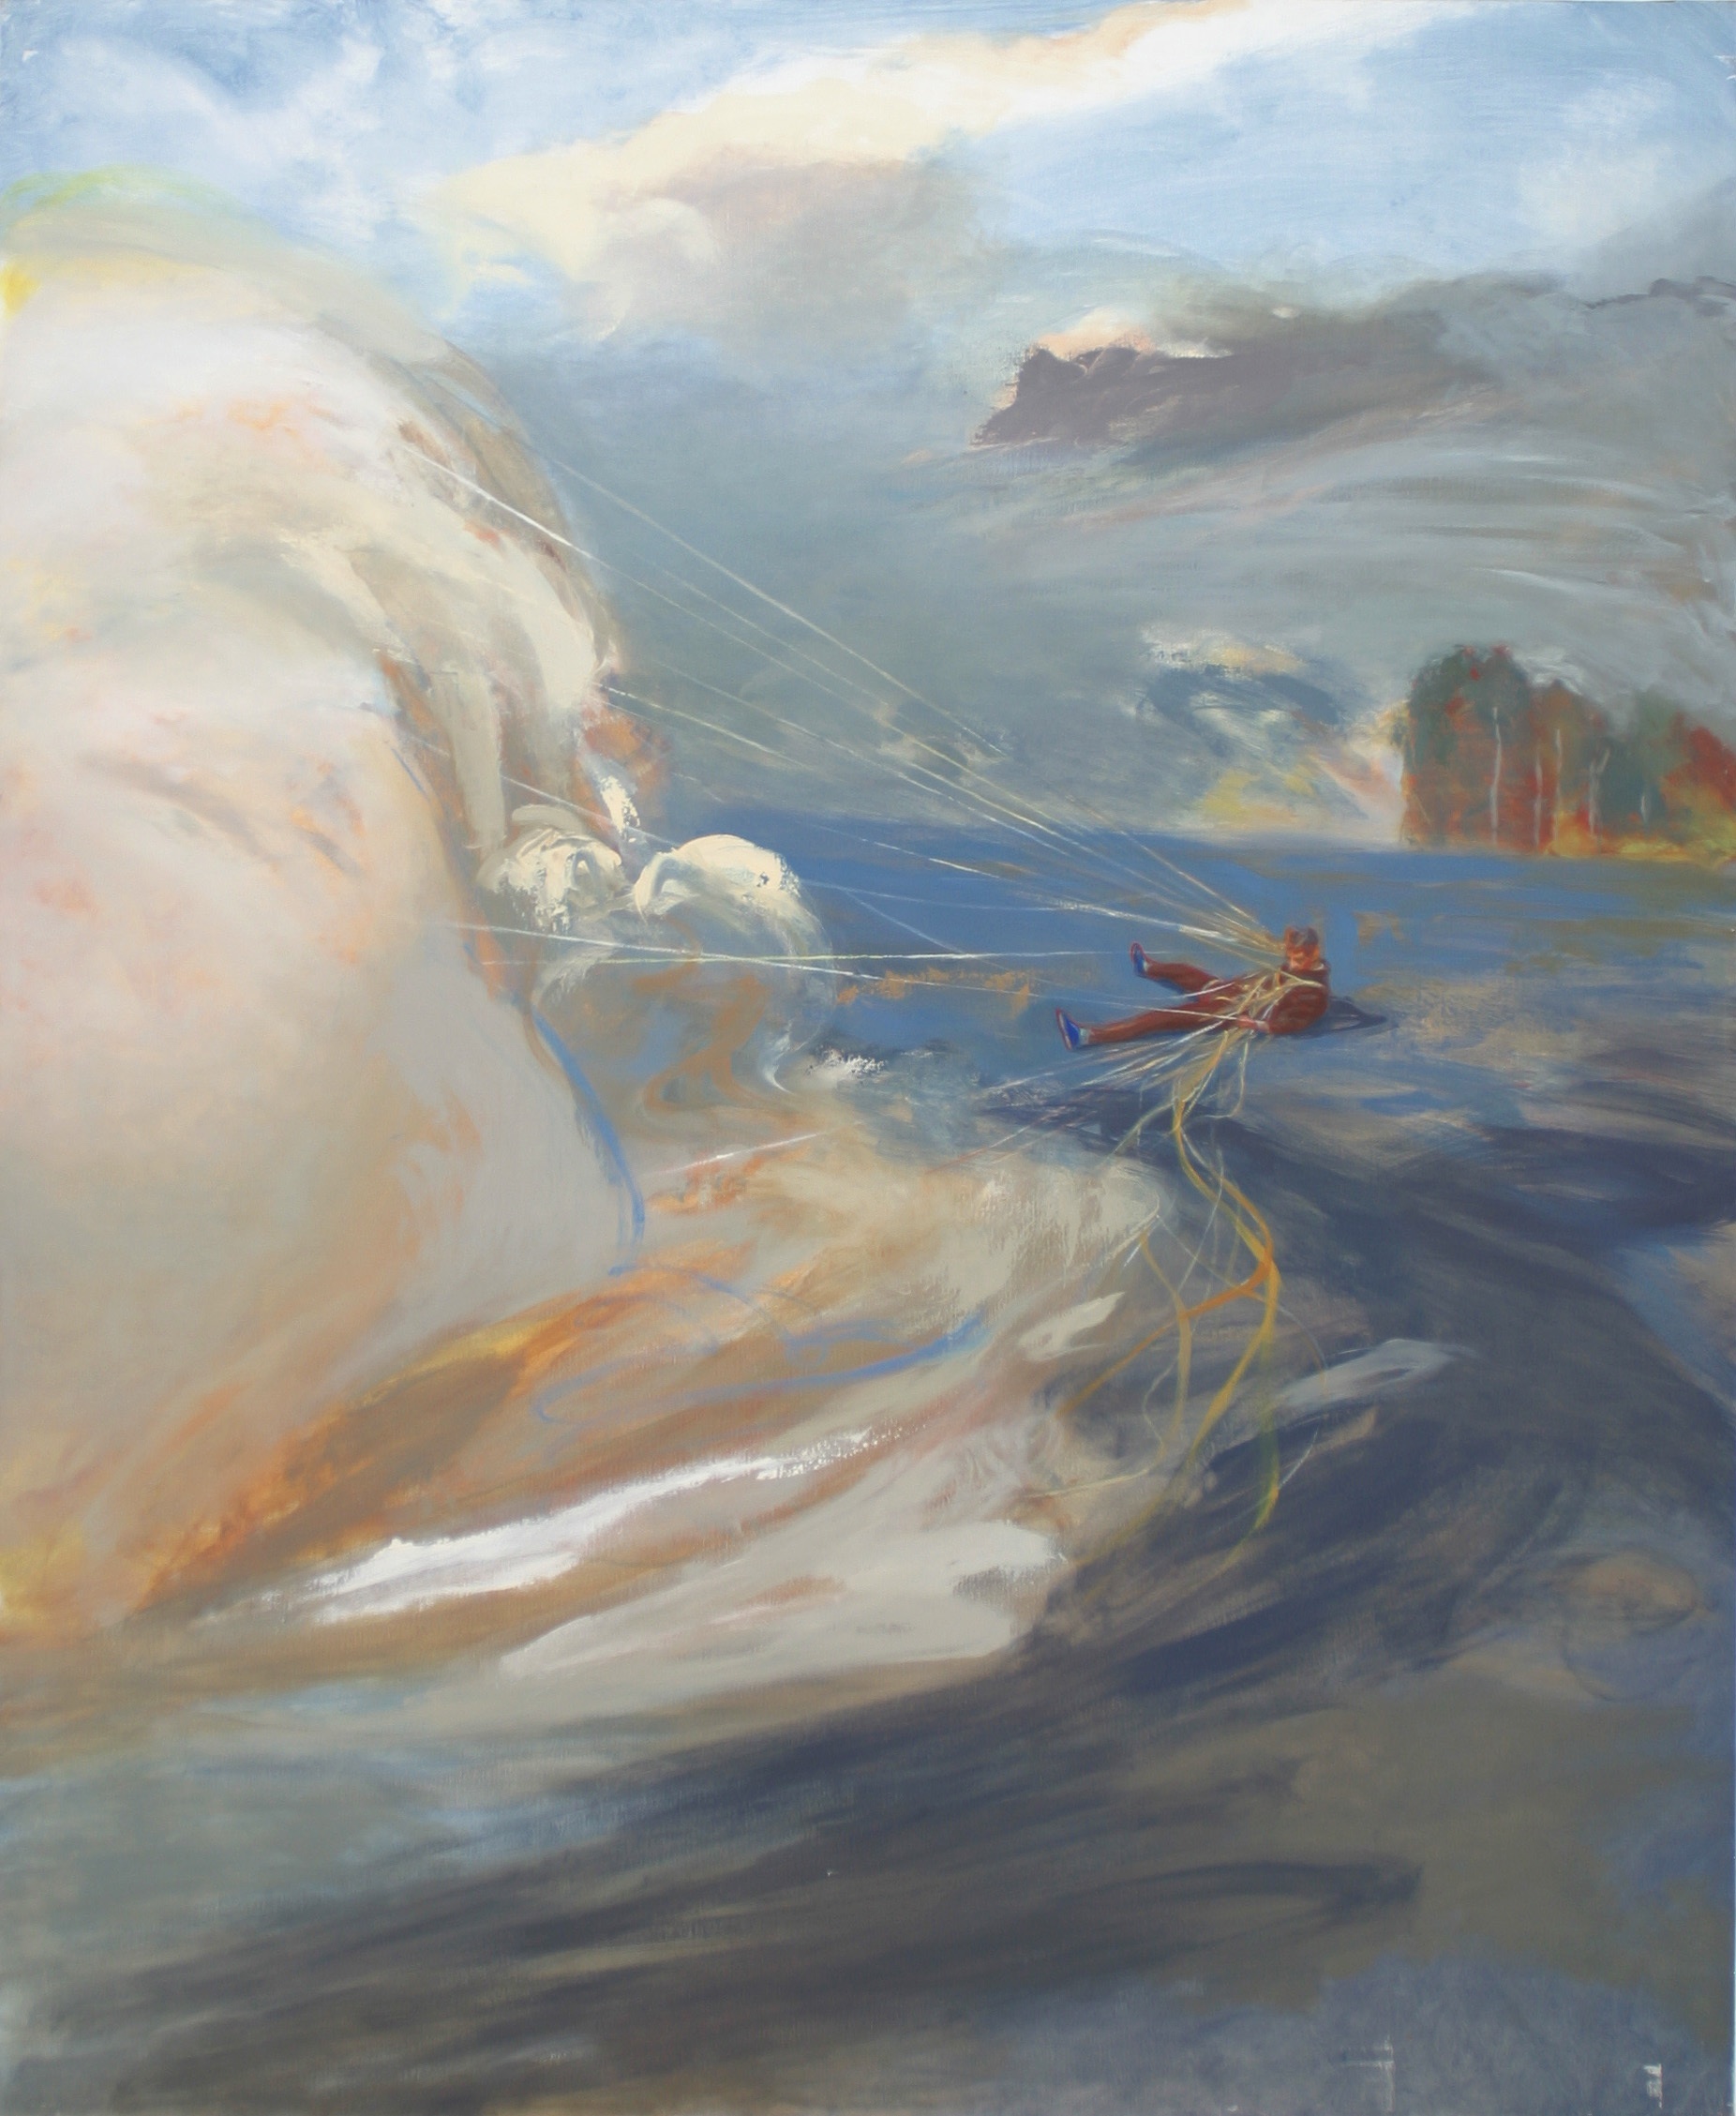    Le dompteur de nuages - huile sur toile - 190x160 cm -&nbsp;      Collection privée      